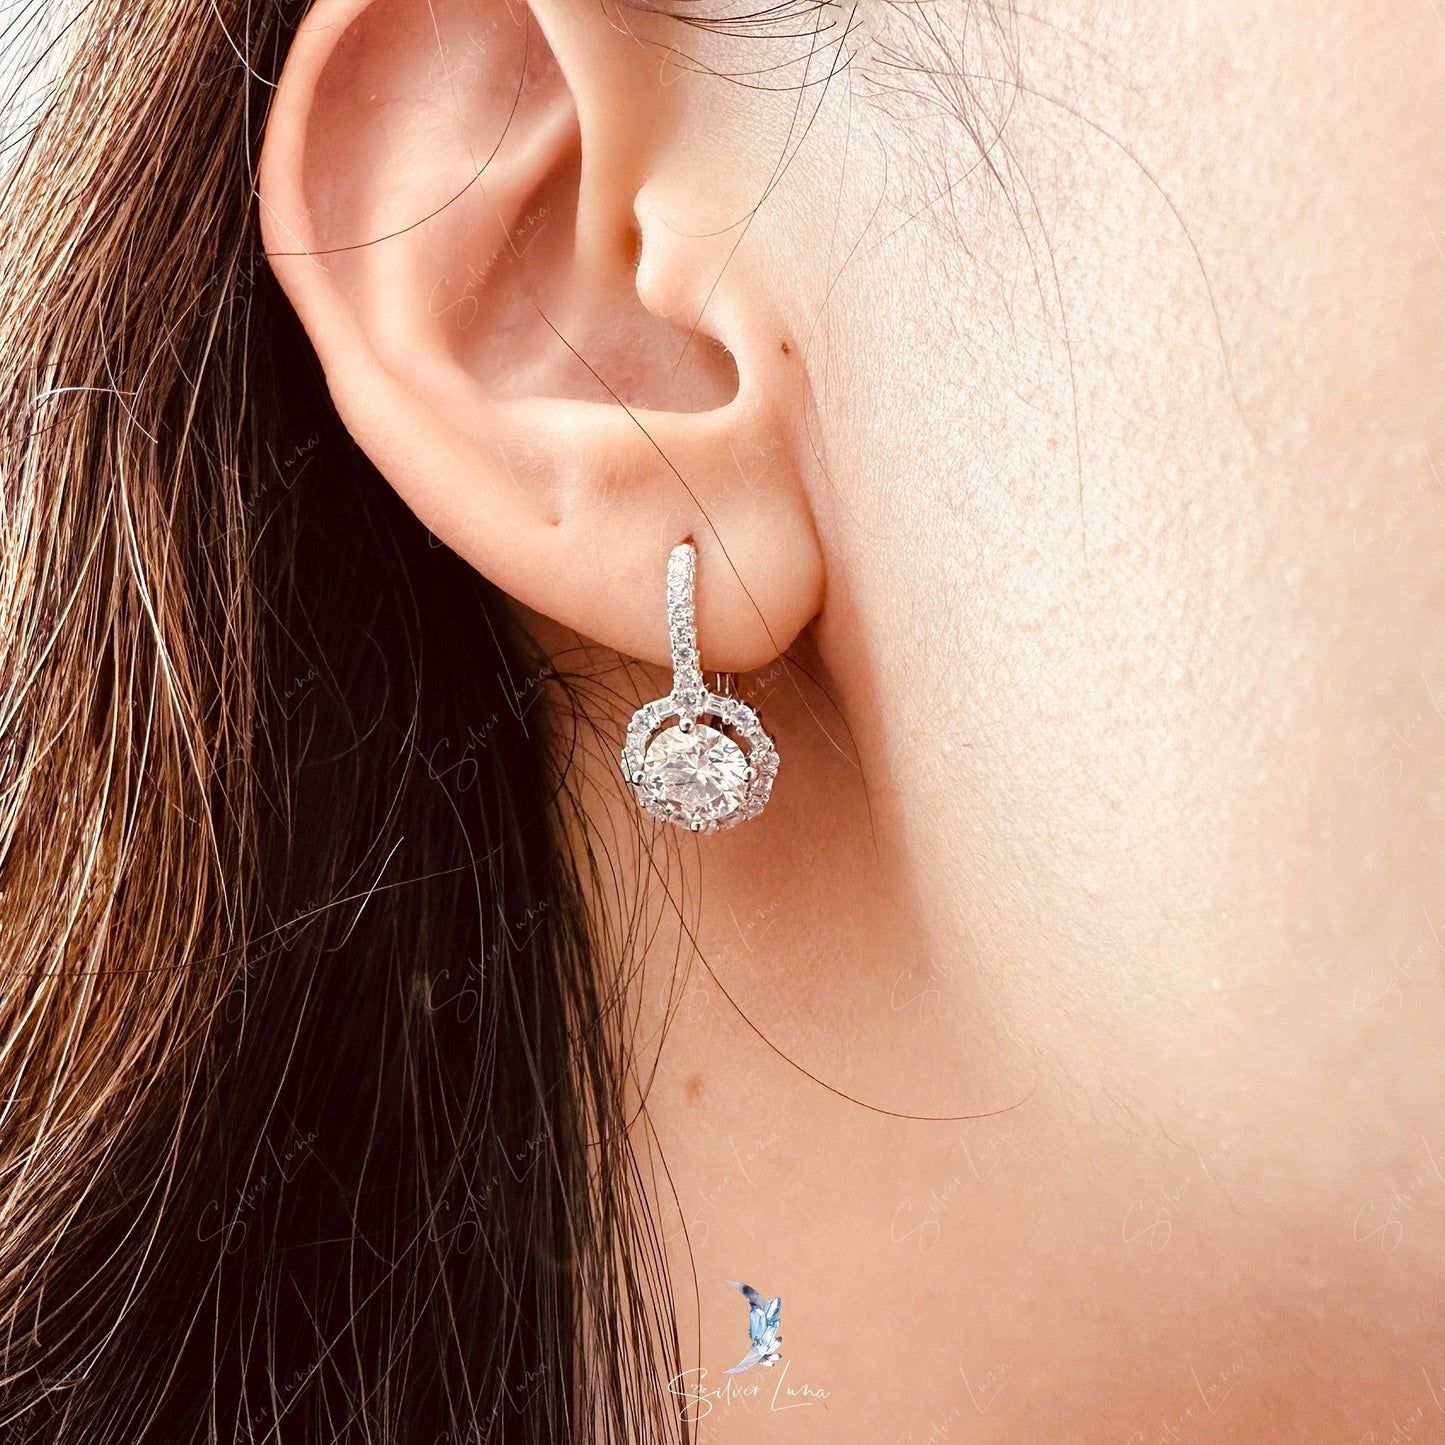 halo moisante silver earrings